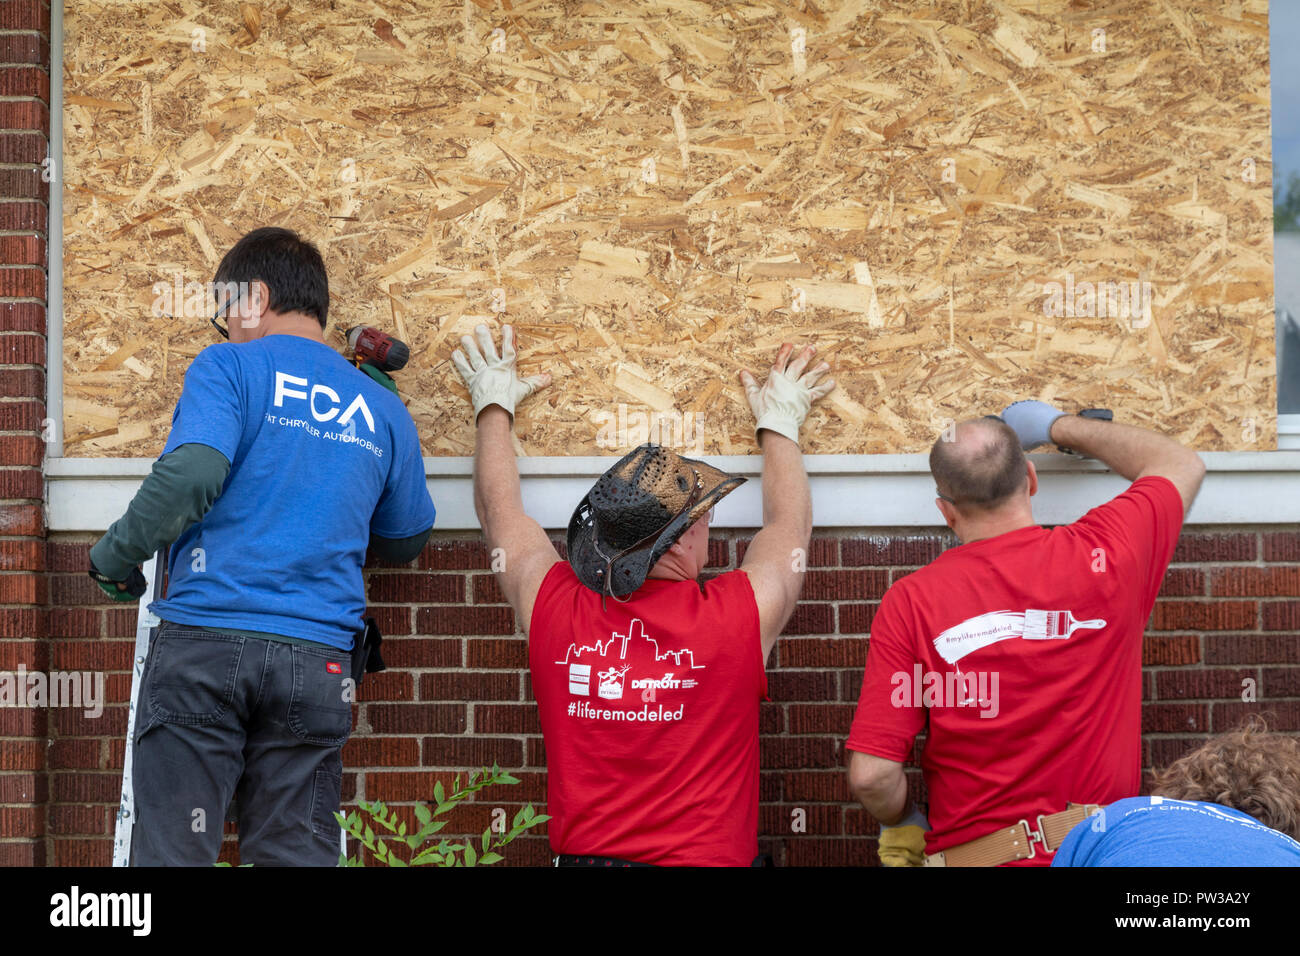 Detroit, Michigan - Freiwilligen Bereinigung einer beunruhigten Nachbarschaft während einer Woche - lange Gemeinschaft Improvement Initiative namens Leben umgestaltet. Freiwillige Stockfoto